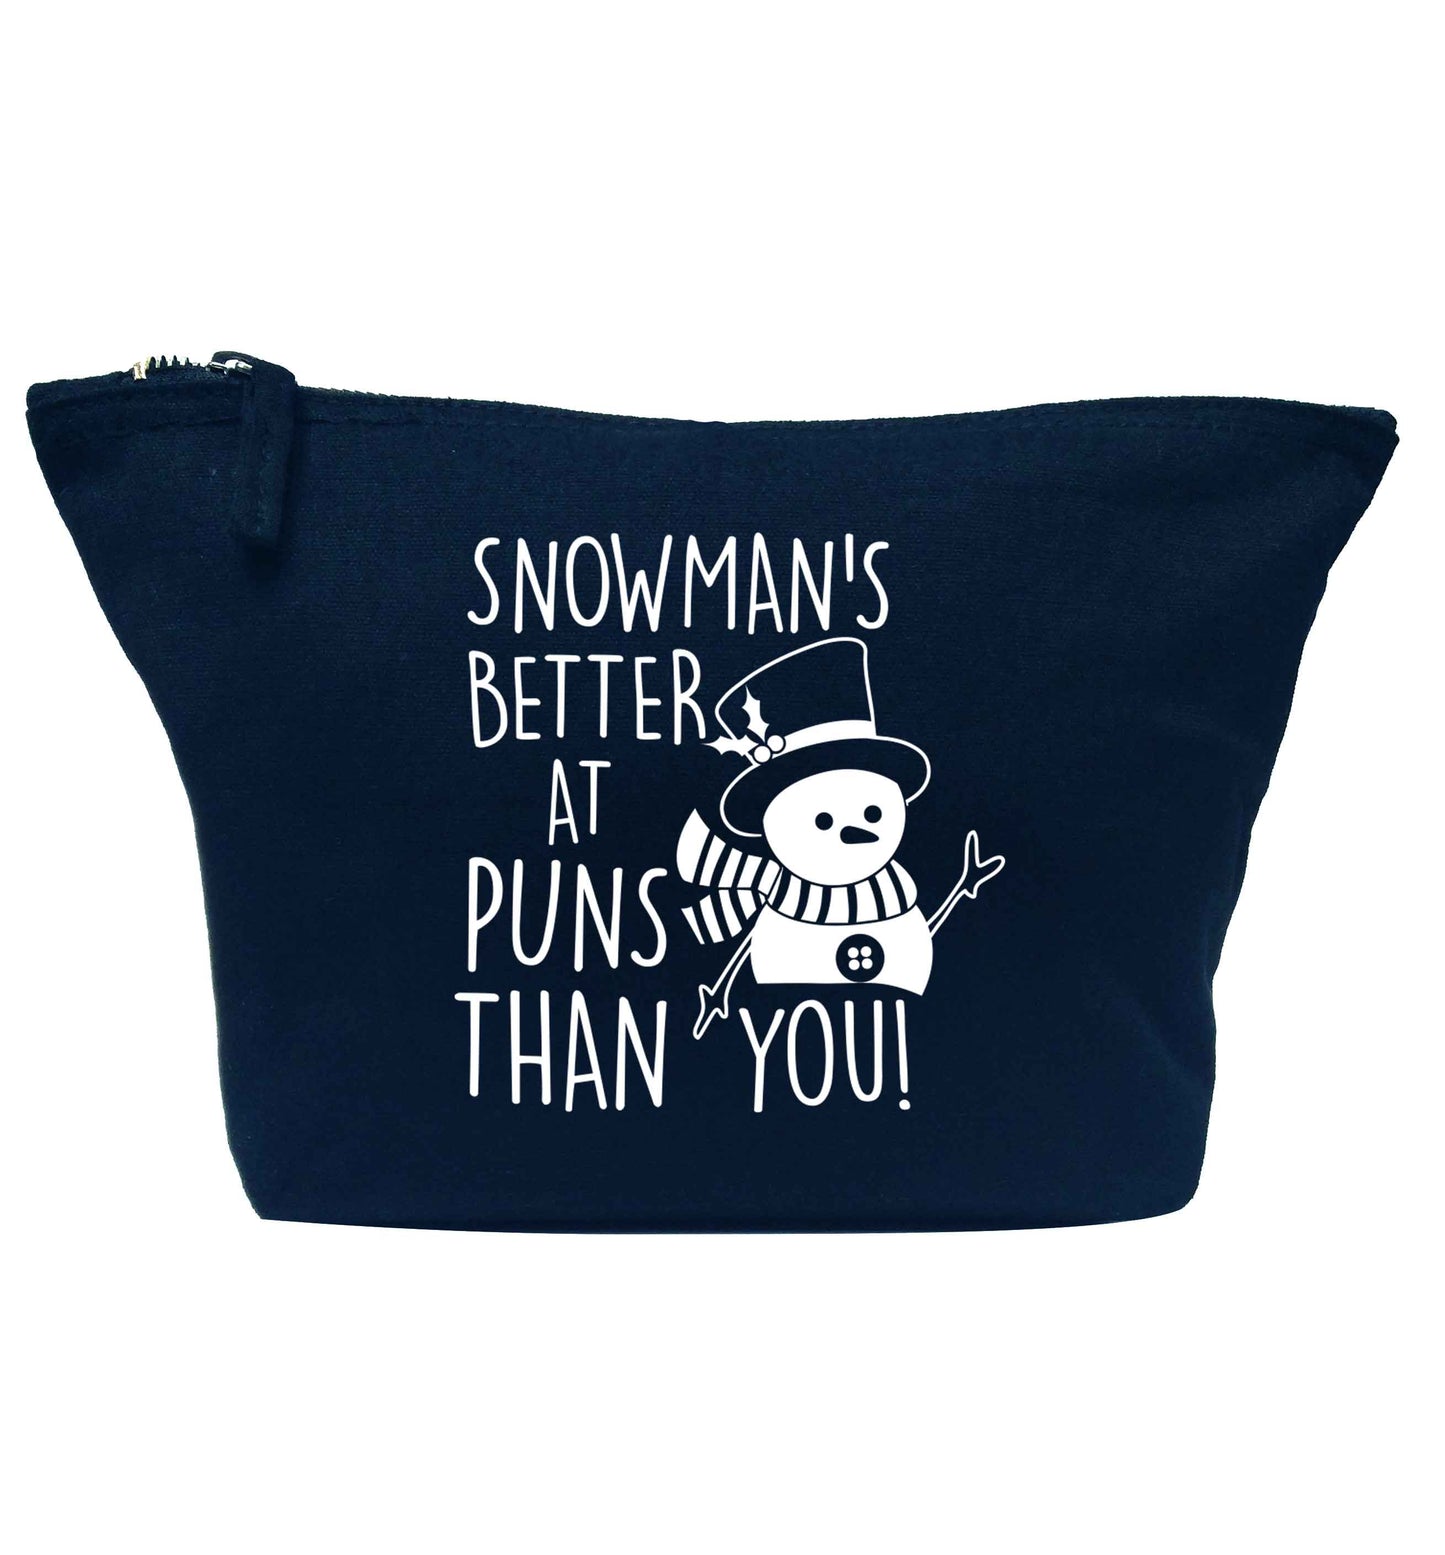 Snowman's Puns You navy makeup bag